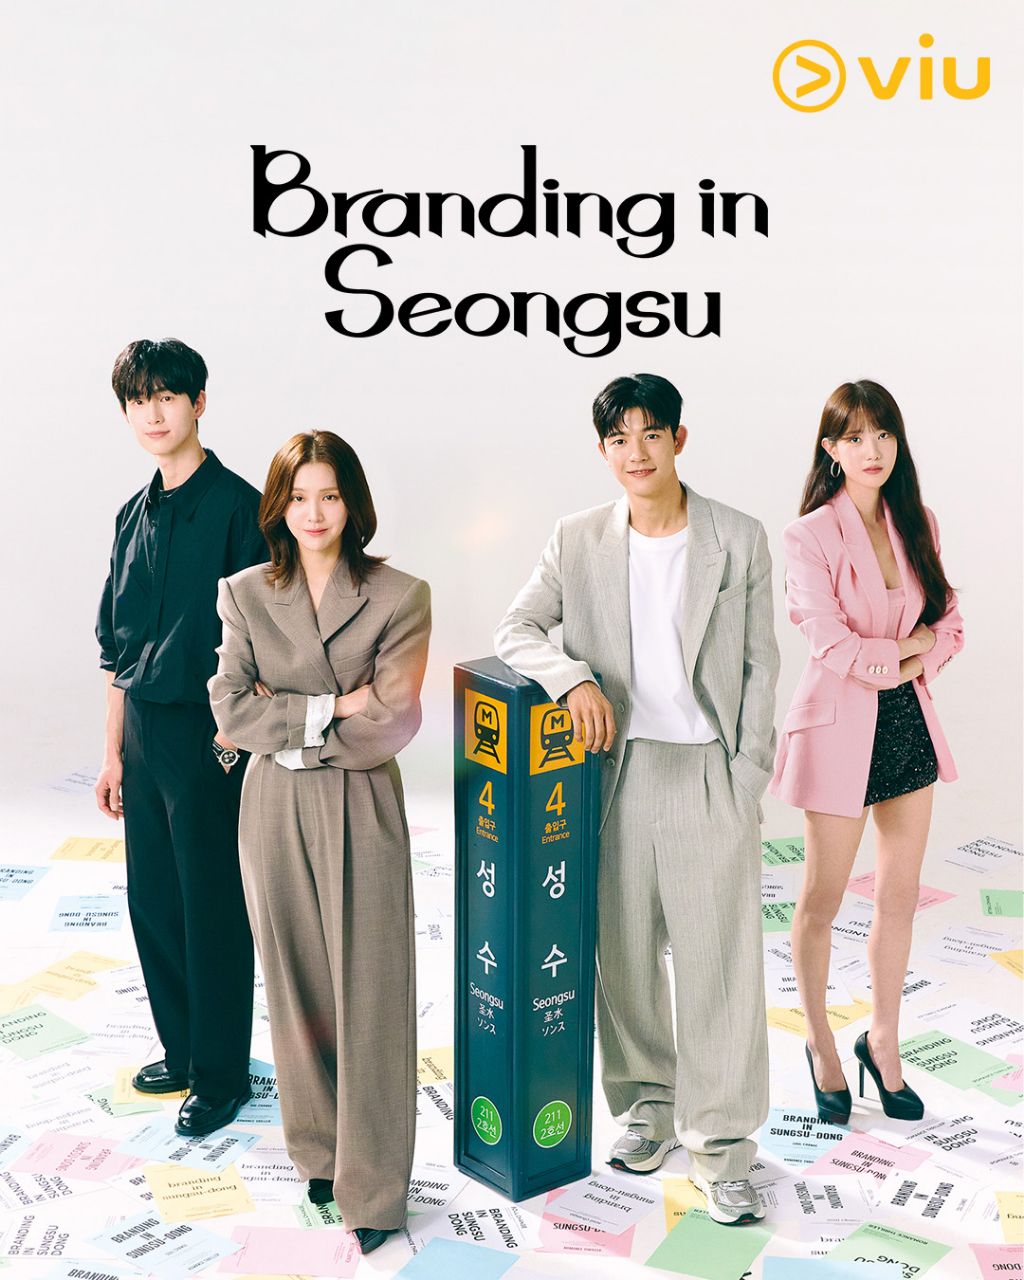 مسلسل العلامة التجارية في سيونغسو Branding in Seongsu الحلقة 2